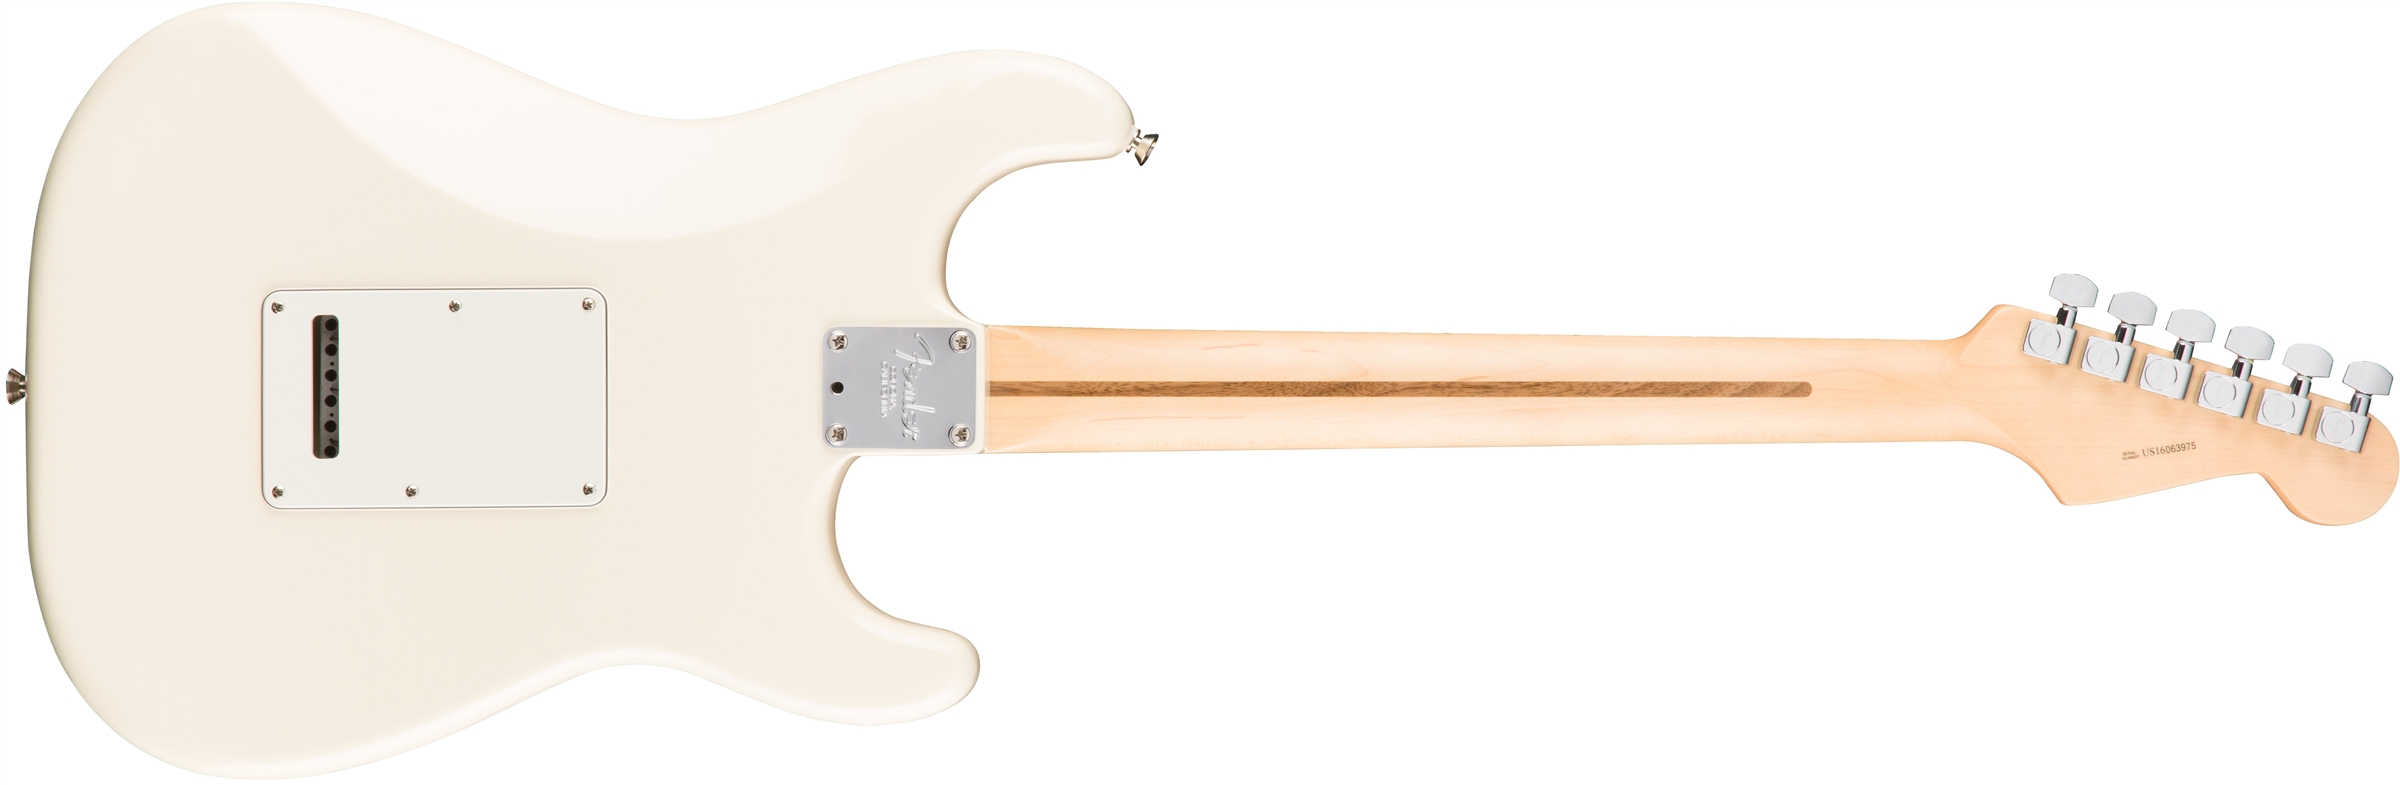 Fender Strat American Professional Lh Usa Gaucher 3s Mn - Olympic White - Linkshandige elektrische gitaar - Variation 1